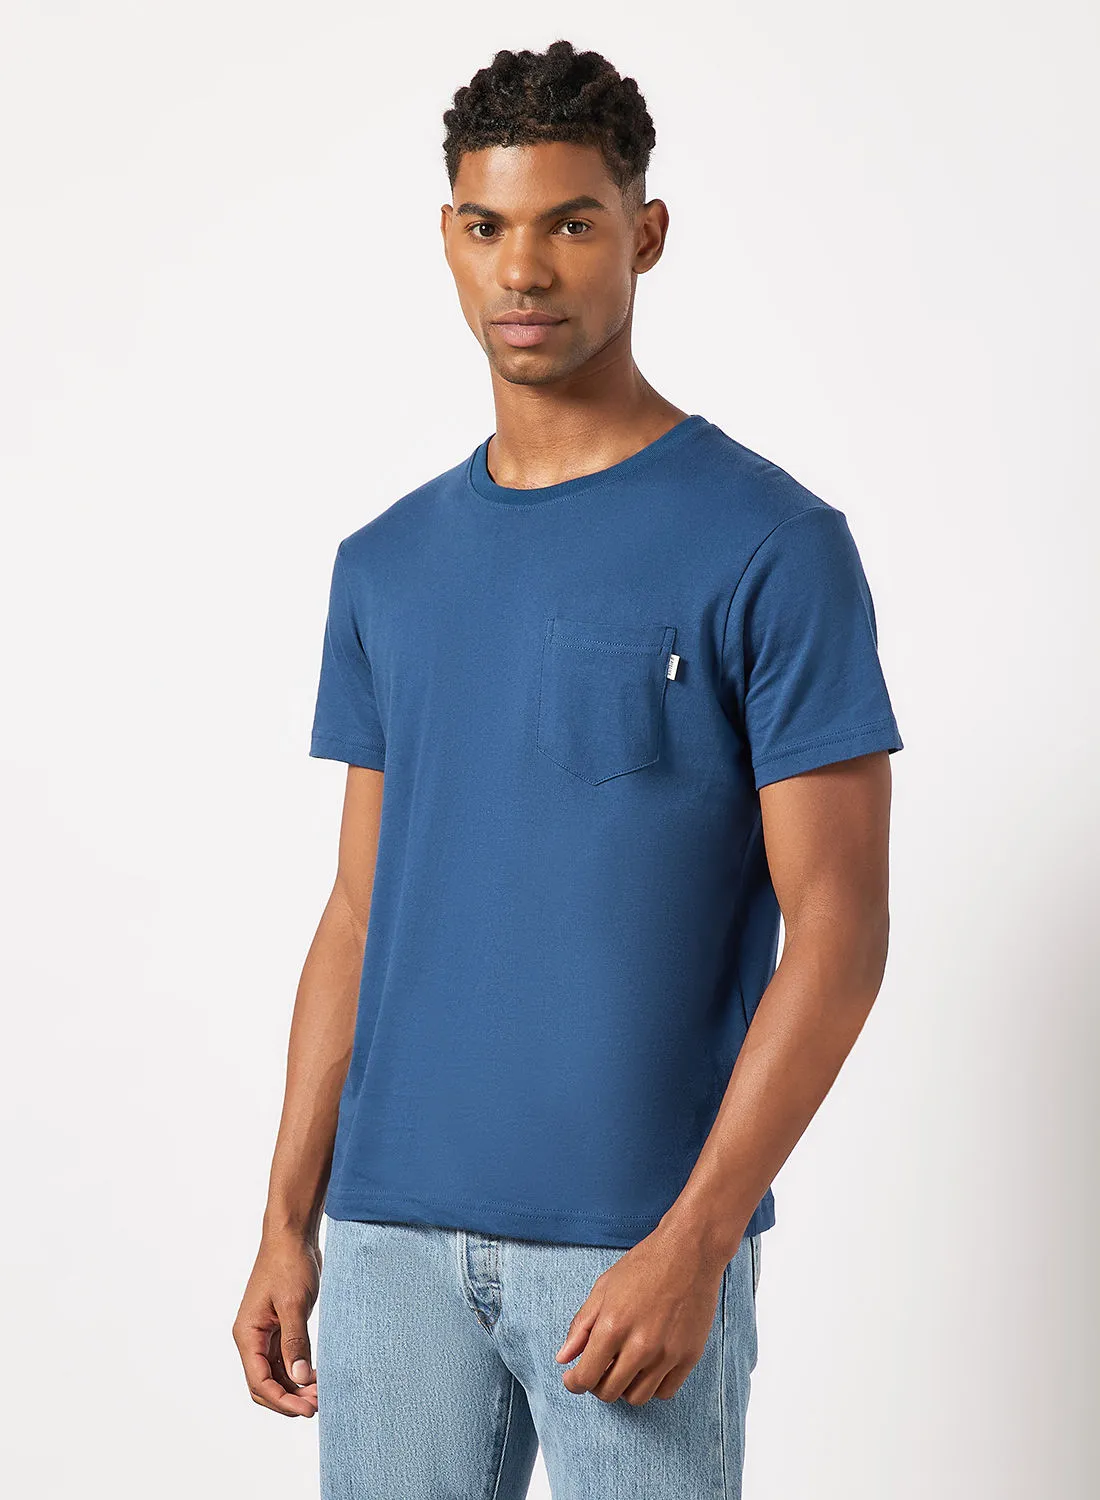 Sivvi x D'Atelier Patch Pocket T-Shirt أزرق